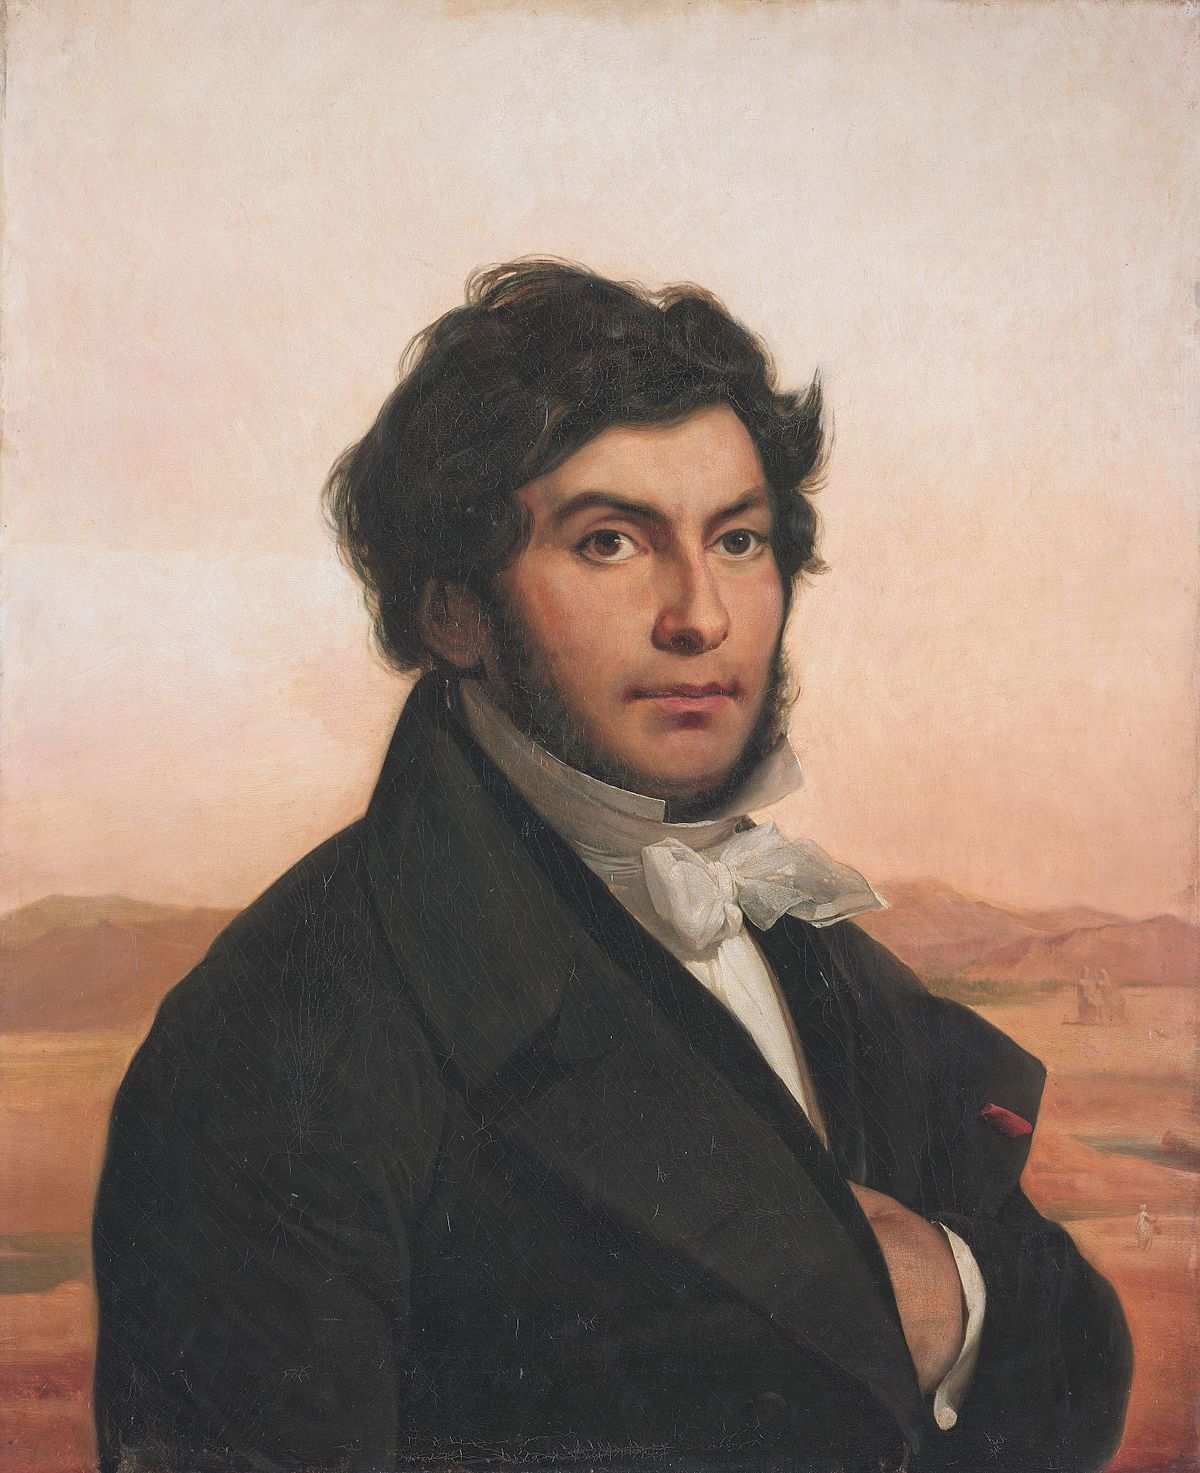 Image of François Champollion.